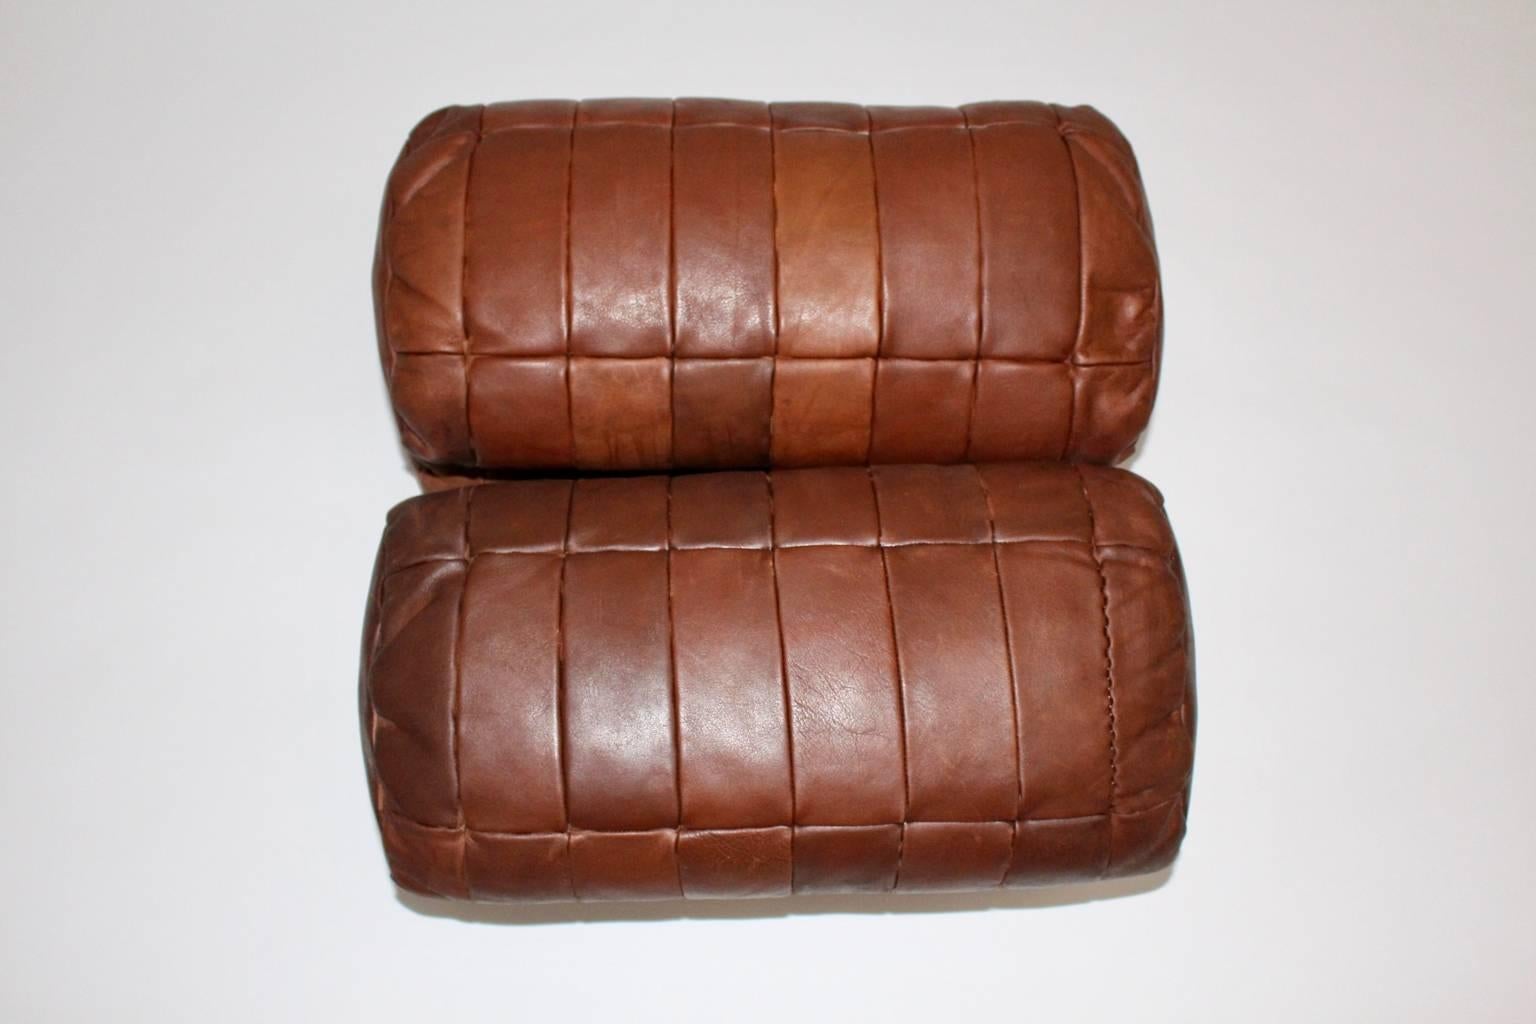 Swiss  De Sede Cognac Leather Pillows, 1970s, Switzerland Set of Four